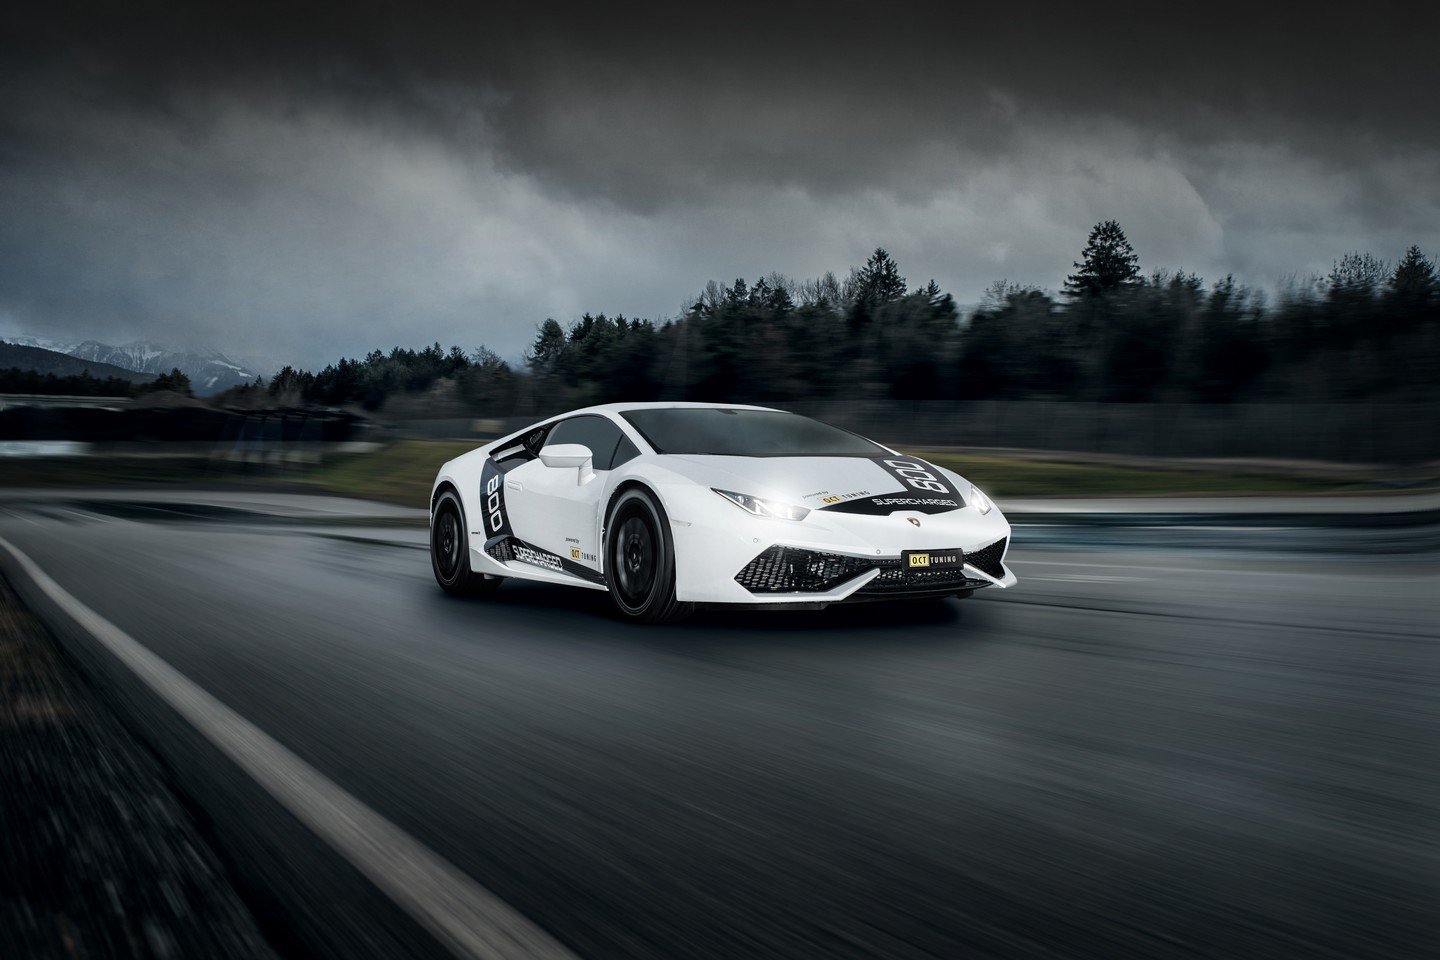 Upravené Lamborghini Huracán s výkonem přesahující hranici 800 koní